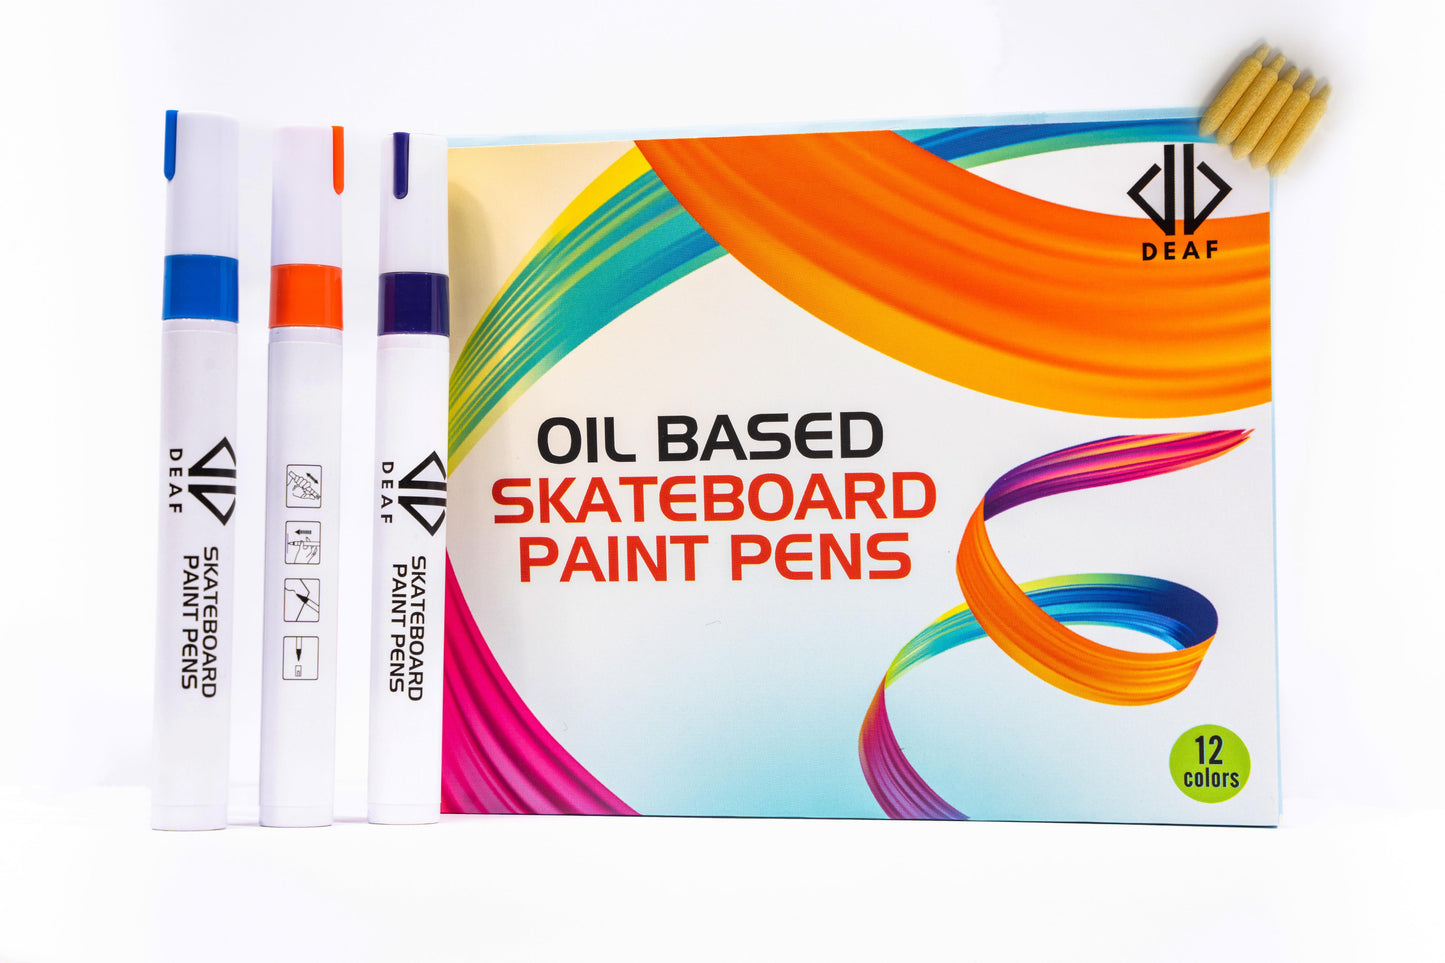 Oil Based Skateboard Paint Pens